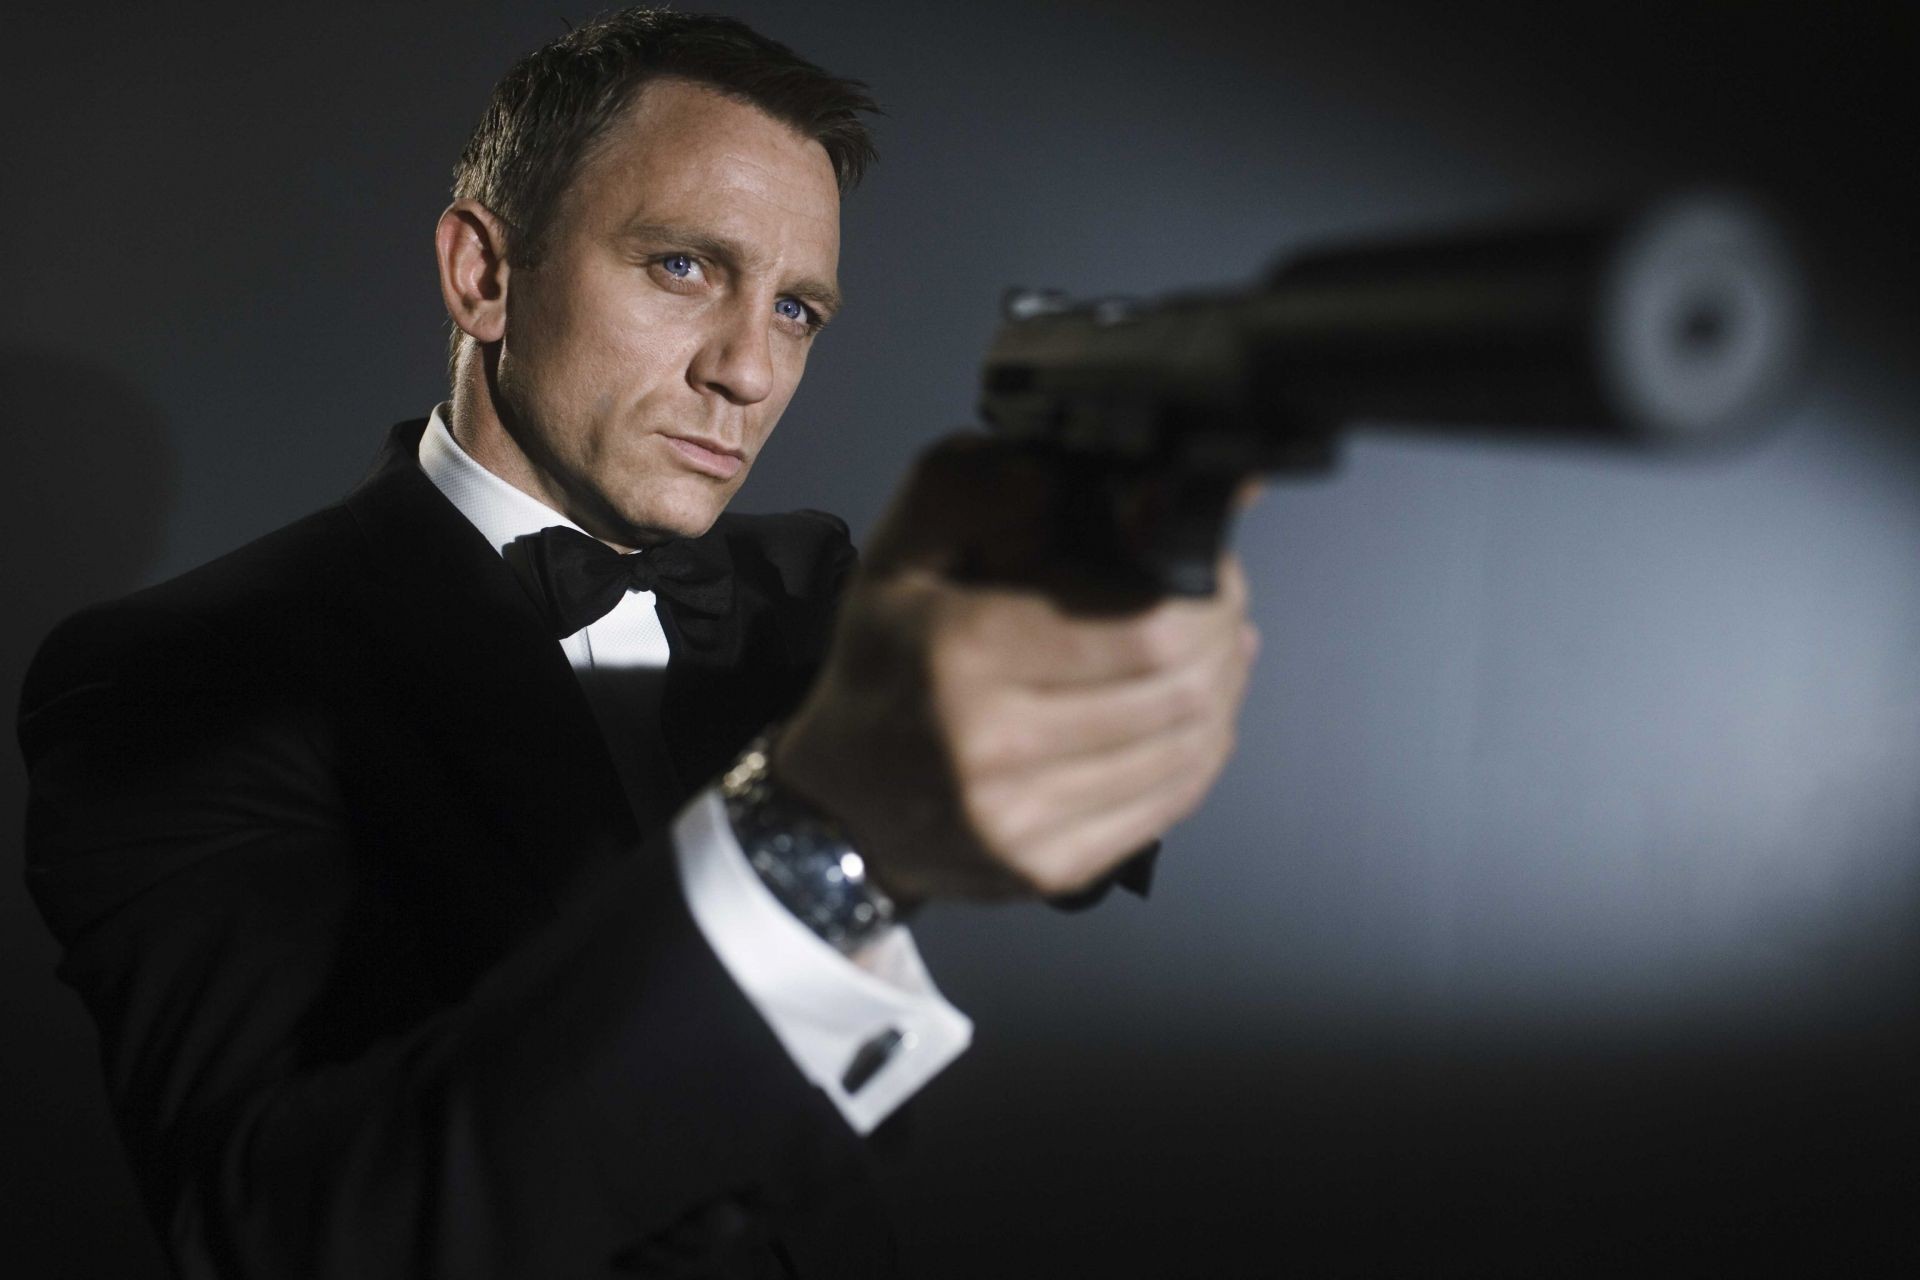 актеры один портрет взрослый человек бизнес наряд пистолет преступление носить оружие